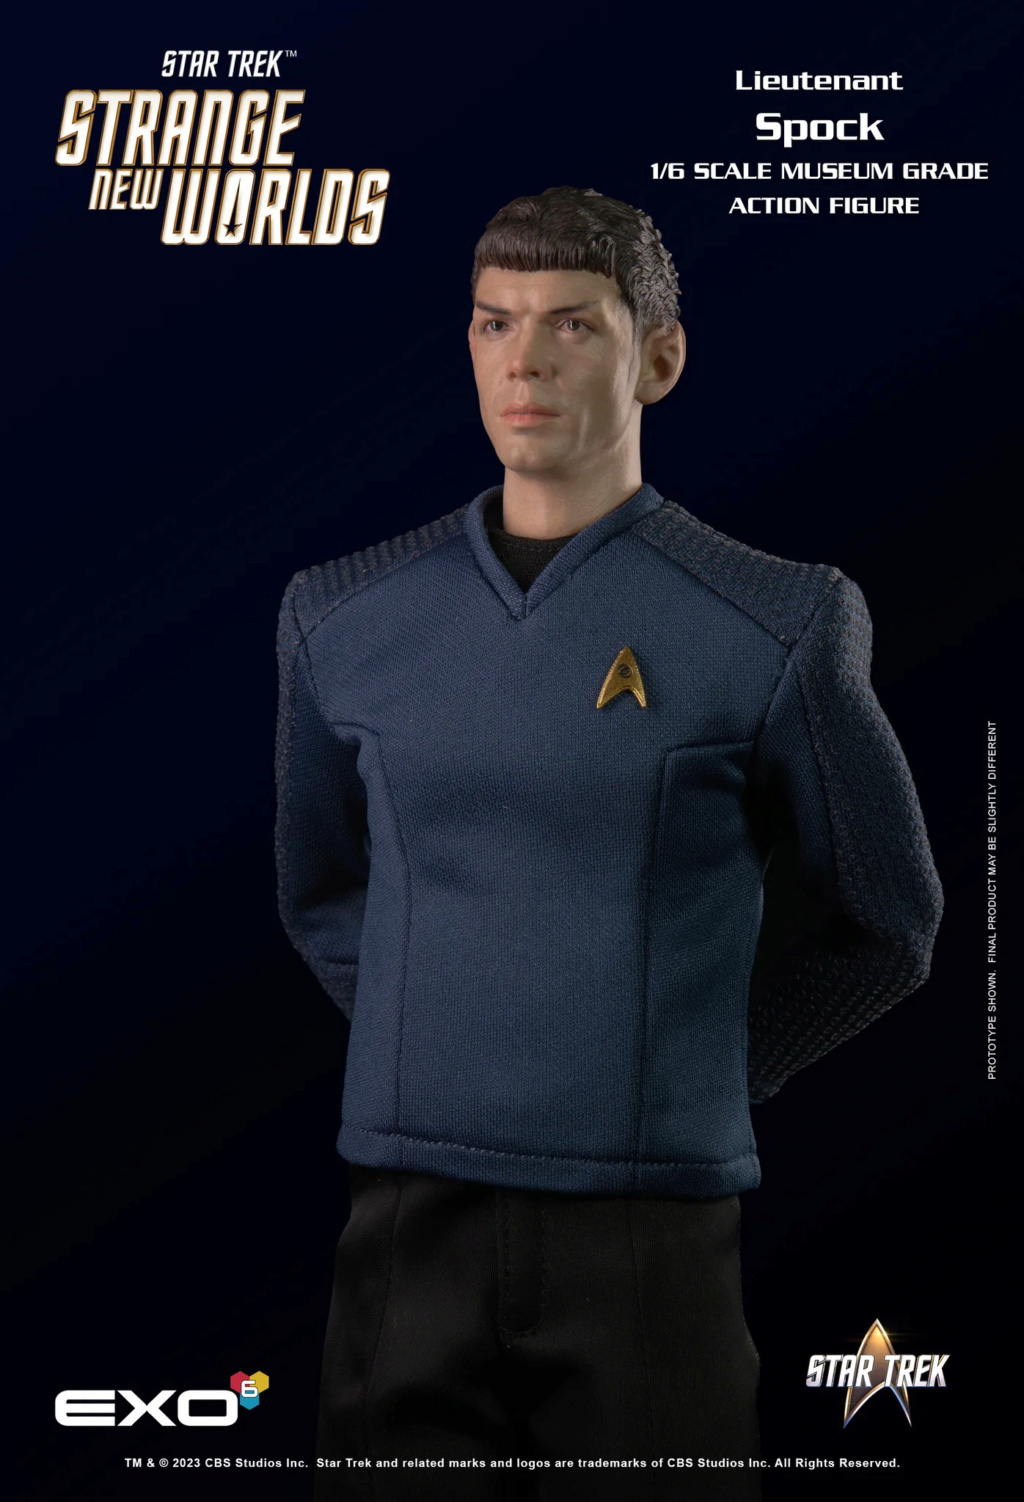 Exo-6 : Star Trek Strange New Worlds - Lieutenant Spock 1/6 Scale Snw_sp17